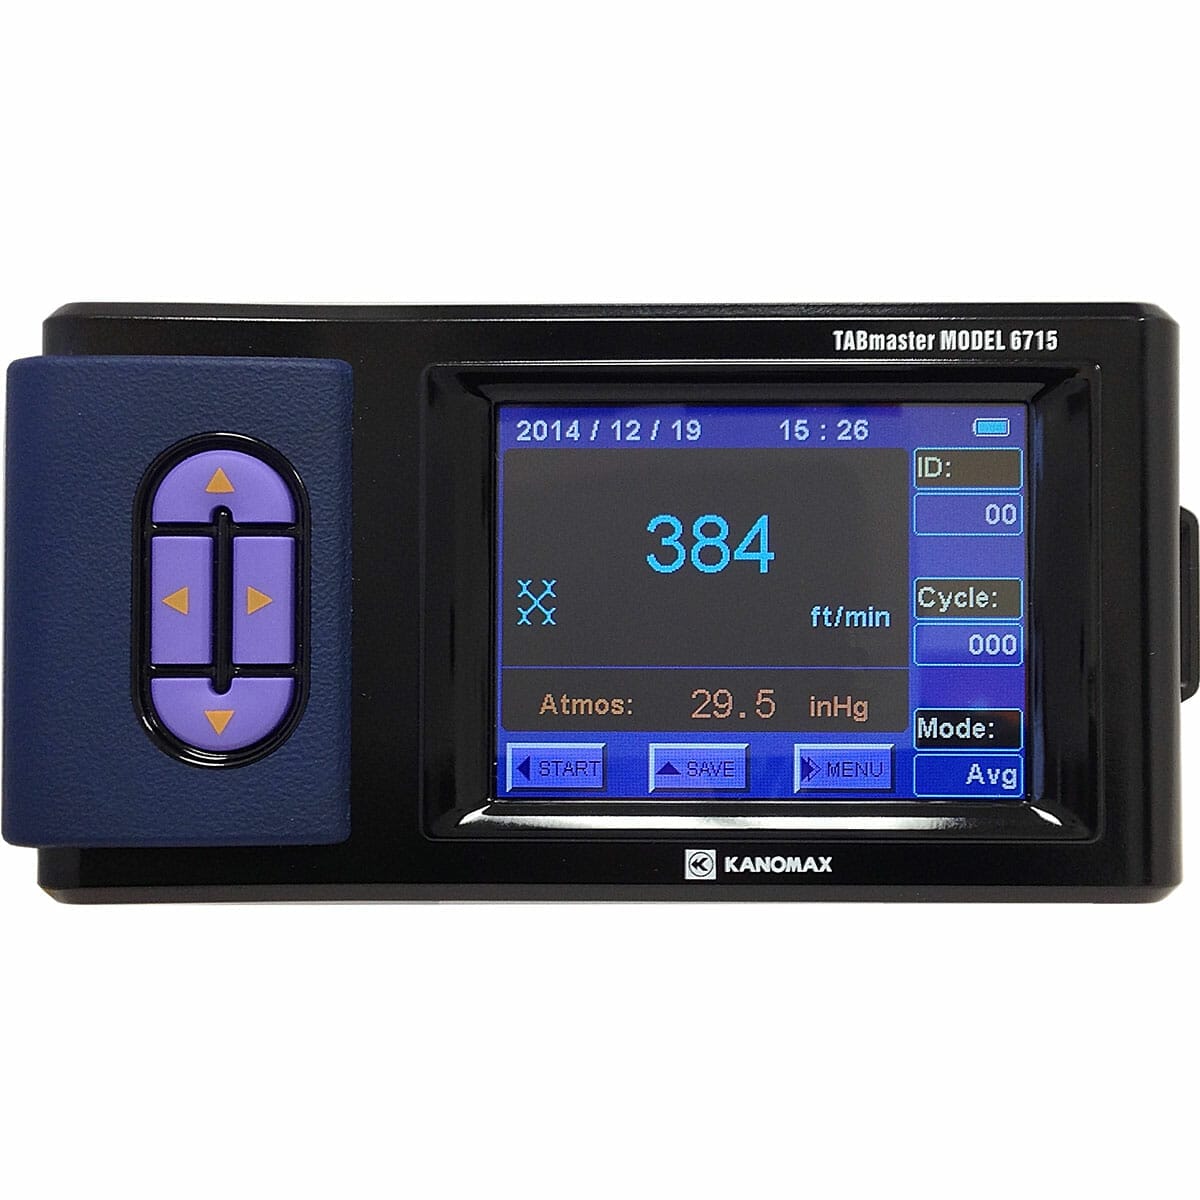 KANOMAX Handheld Micromanometer – Model 6700